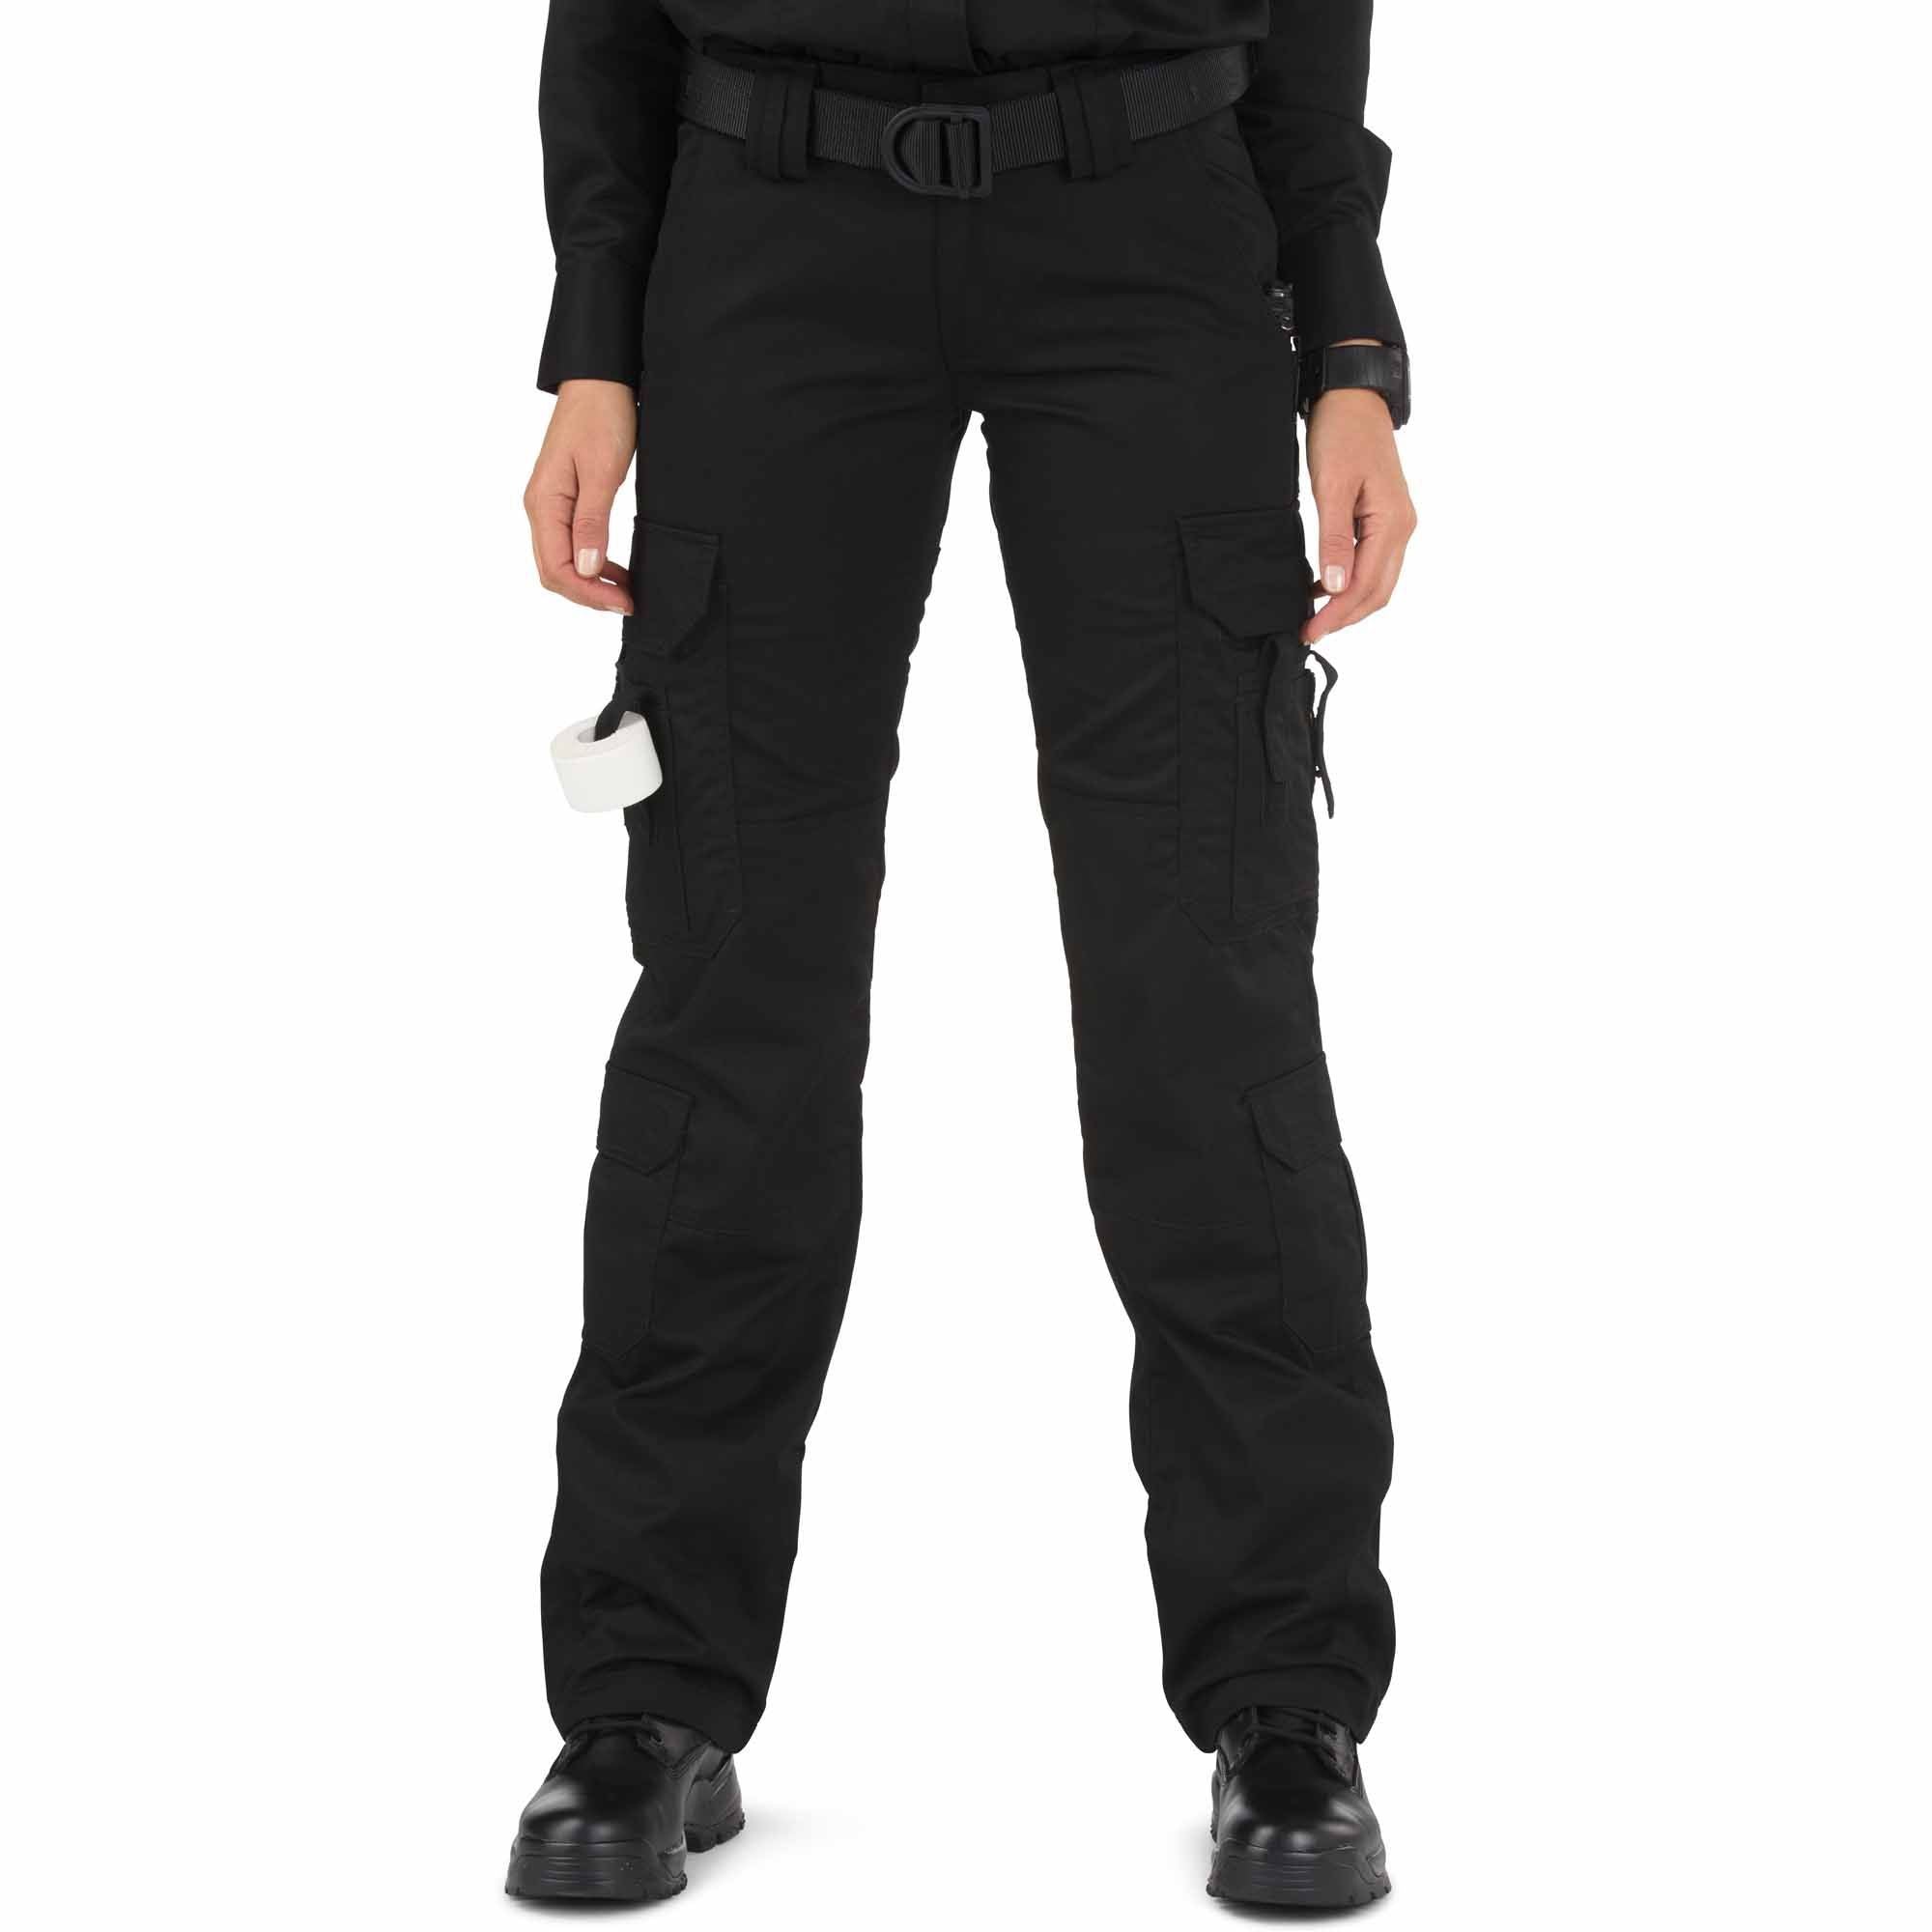 5.11 Women's TACLITE EMS Pant Black Pants 5.11 Tactical Tactical Gear Supplier Tactical Distributors Australia